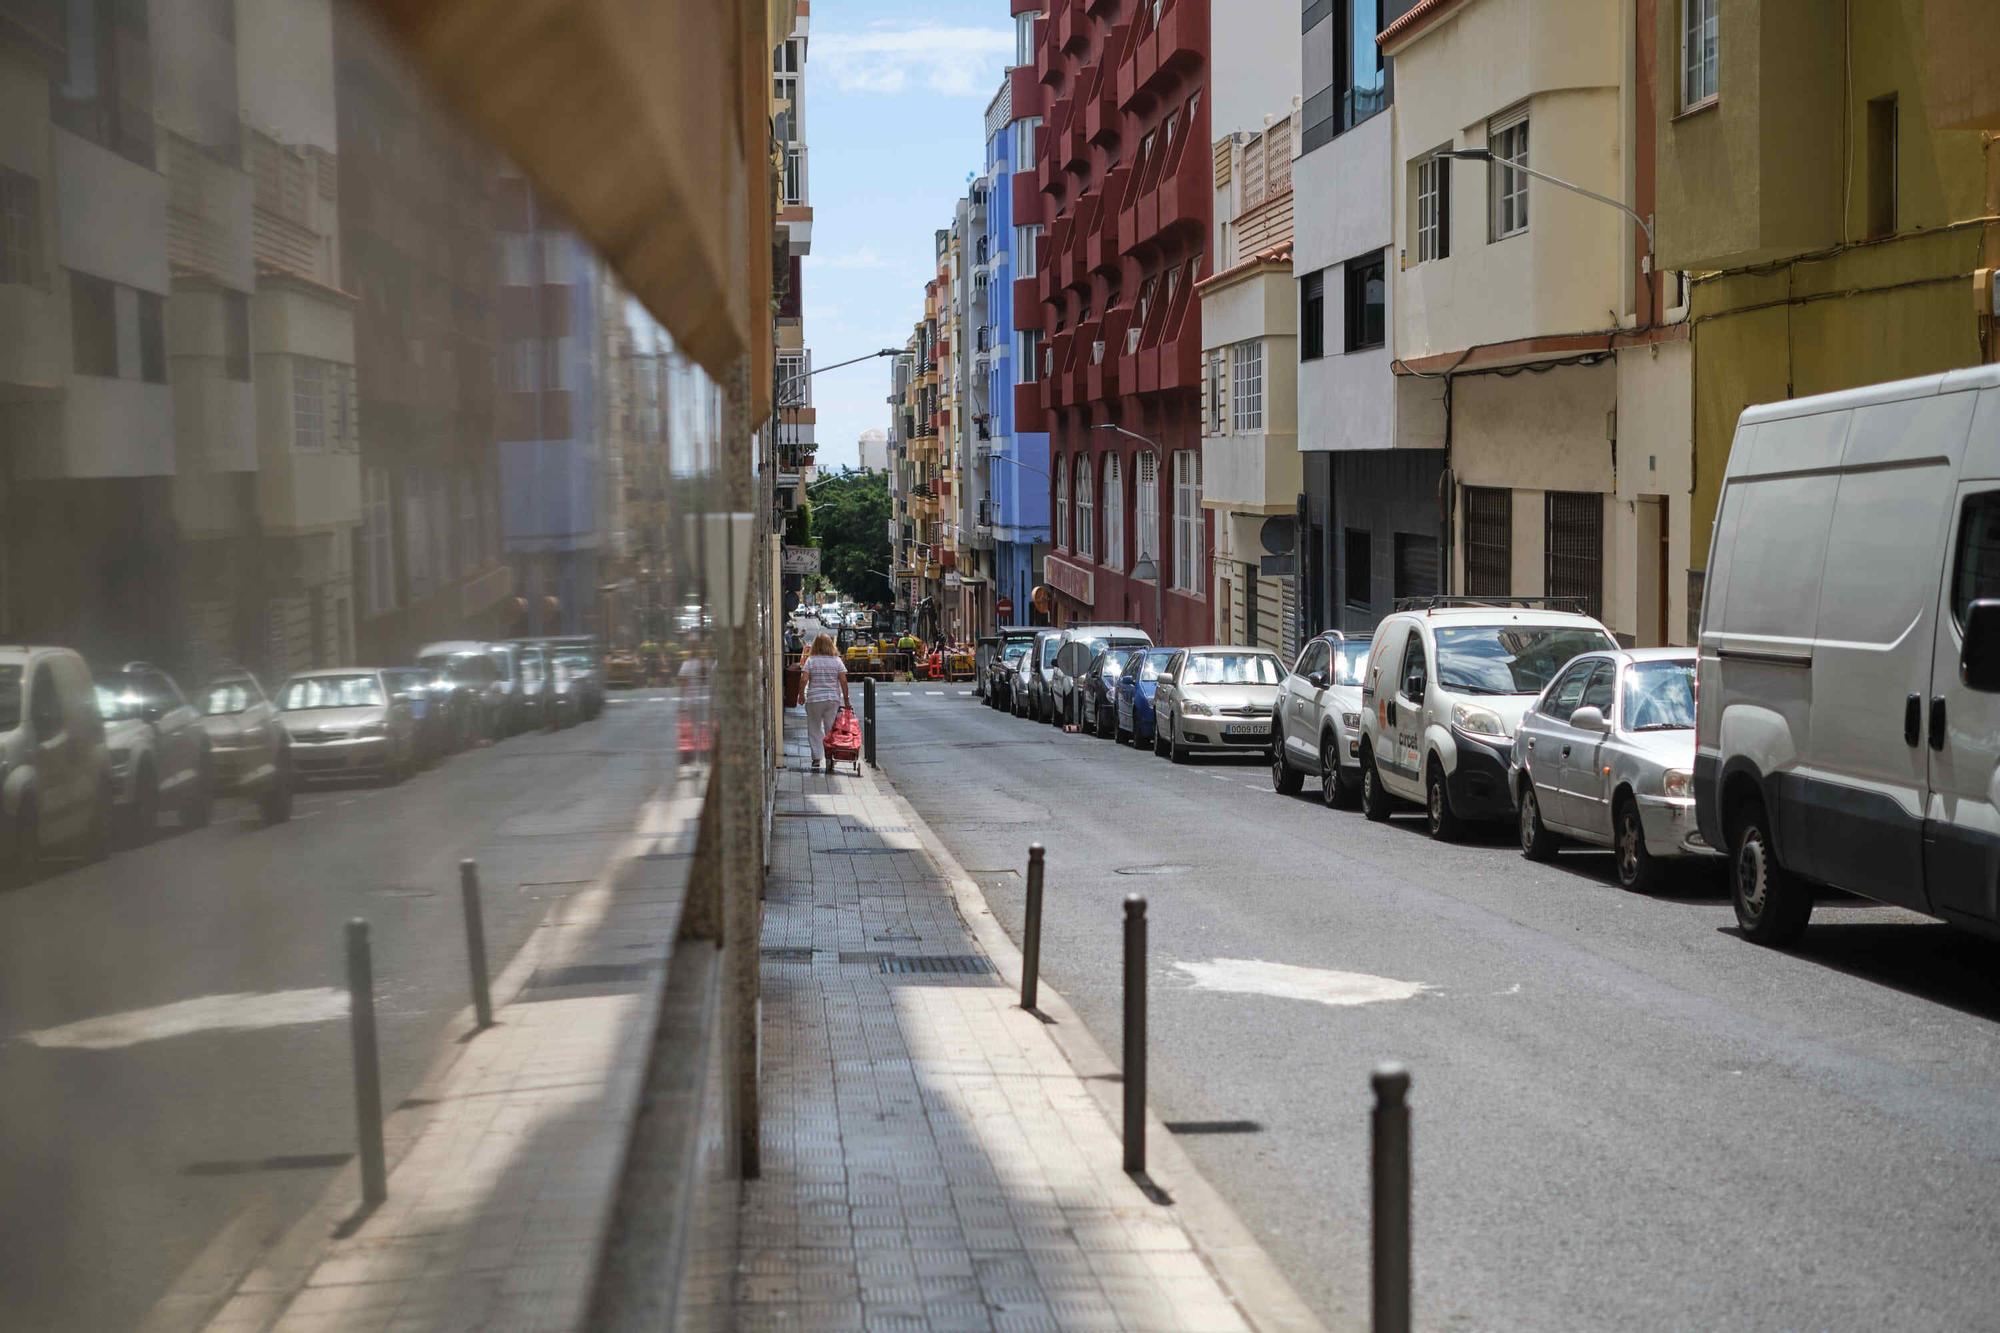 Vecinos calle Serrano, en Santa Cruz de Tenerife, contra el paso de las guaguas